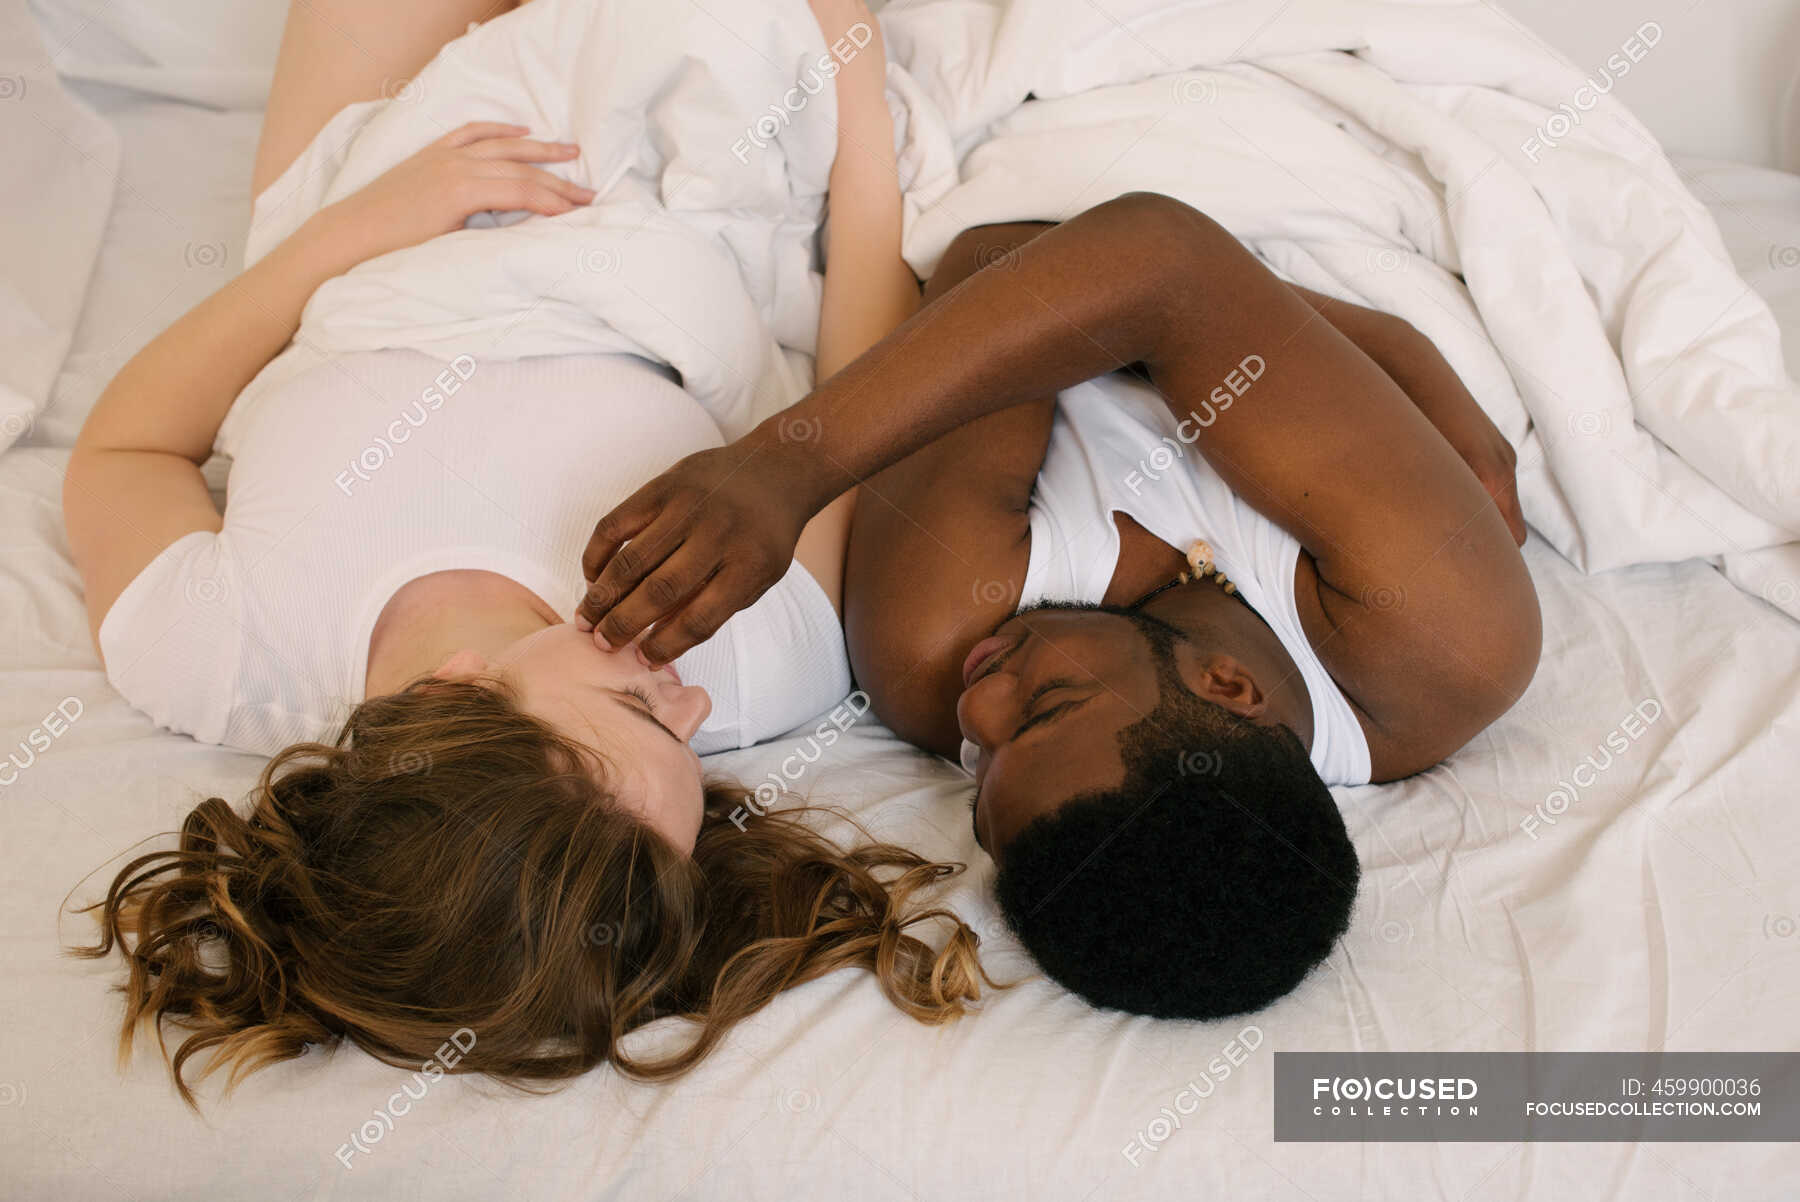 Femme à Droite Dans Le Lit Couple Couple mixte couché au lit se regardant — 25 29 ans, en se regardant -  Stock Photo | #459900036